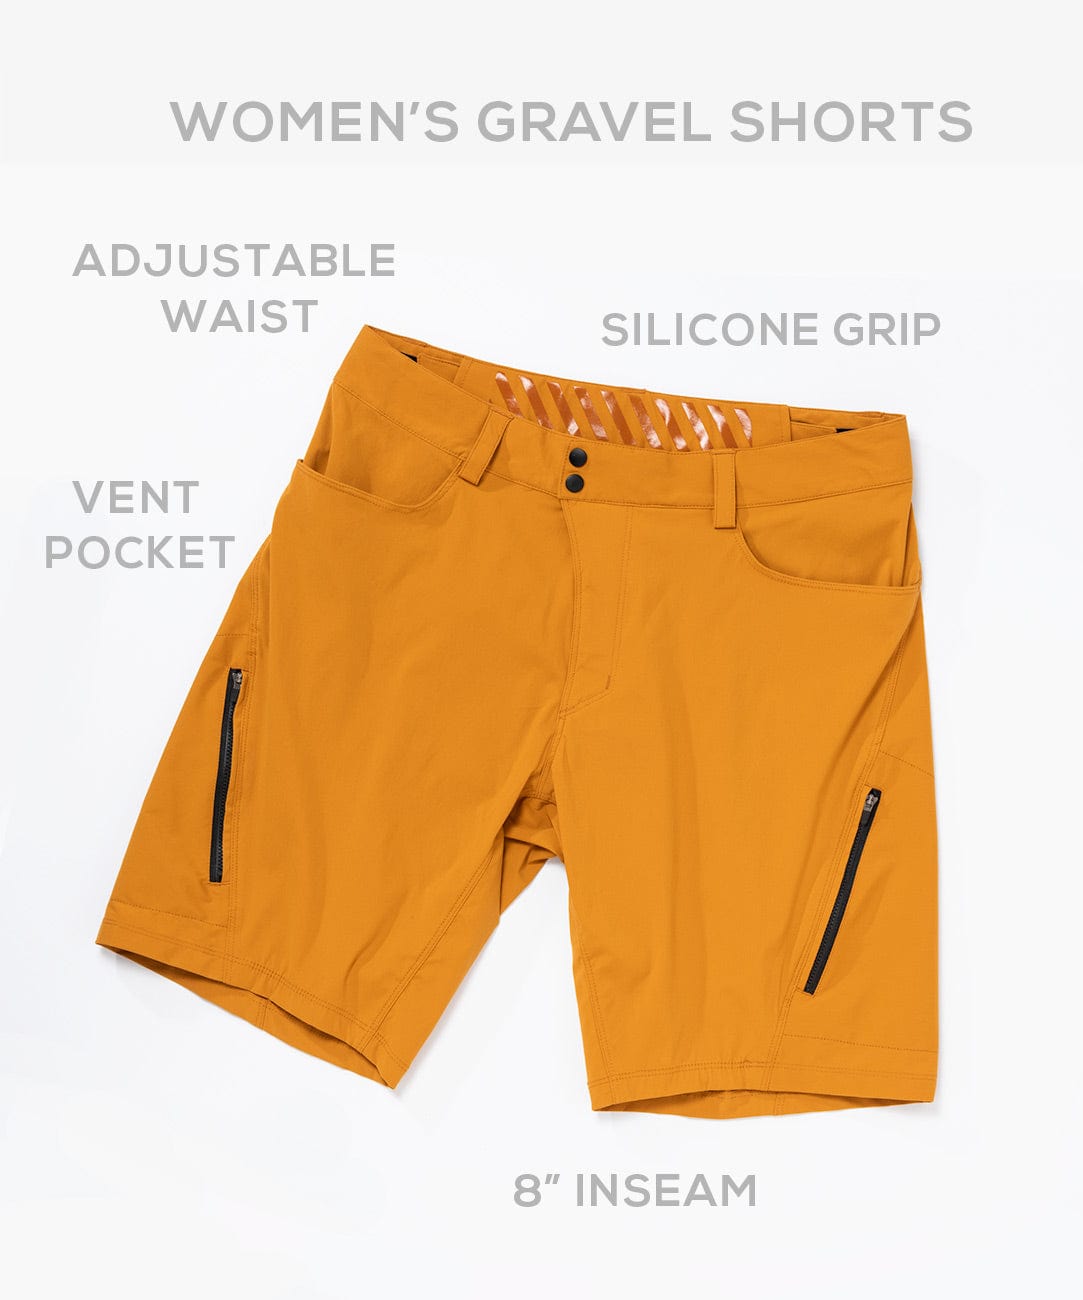 Women's Gravel 8" Shorts